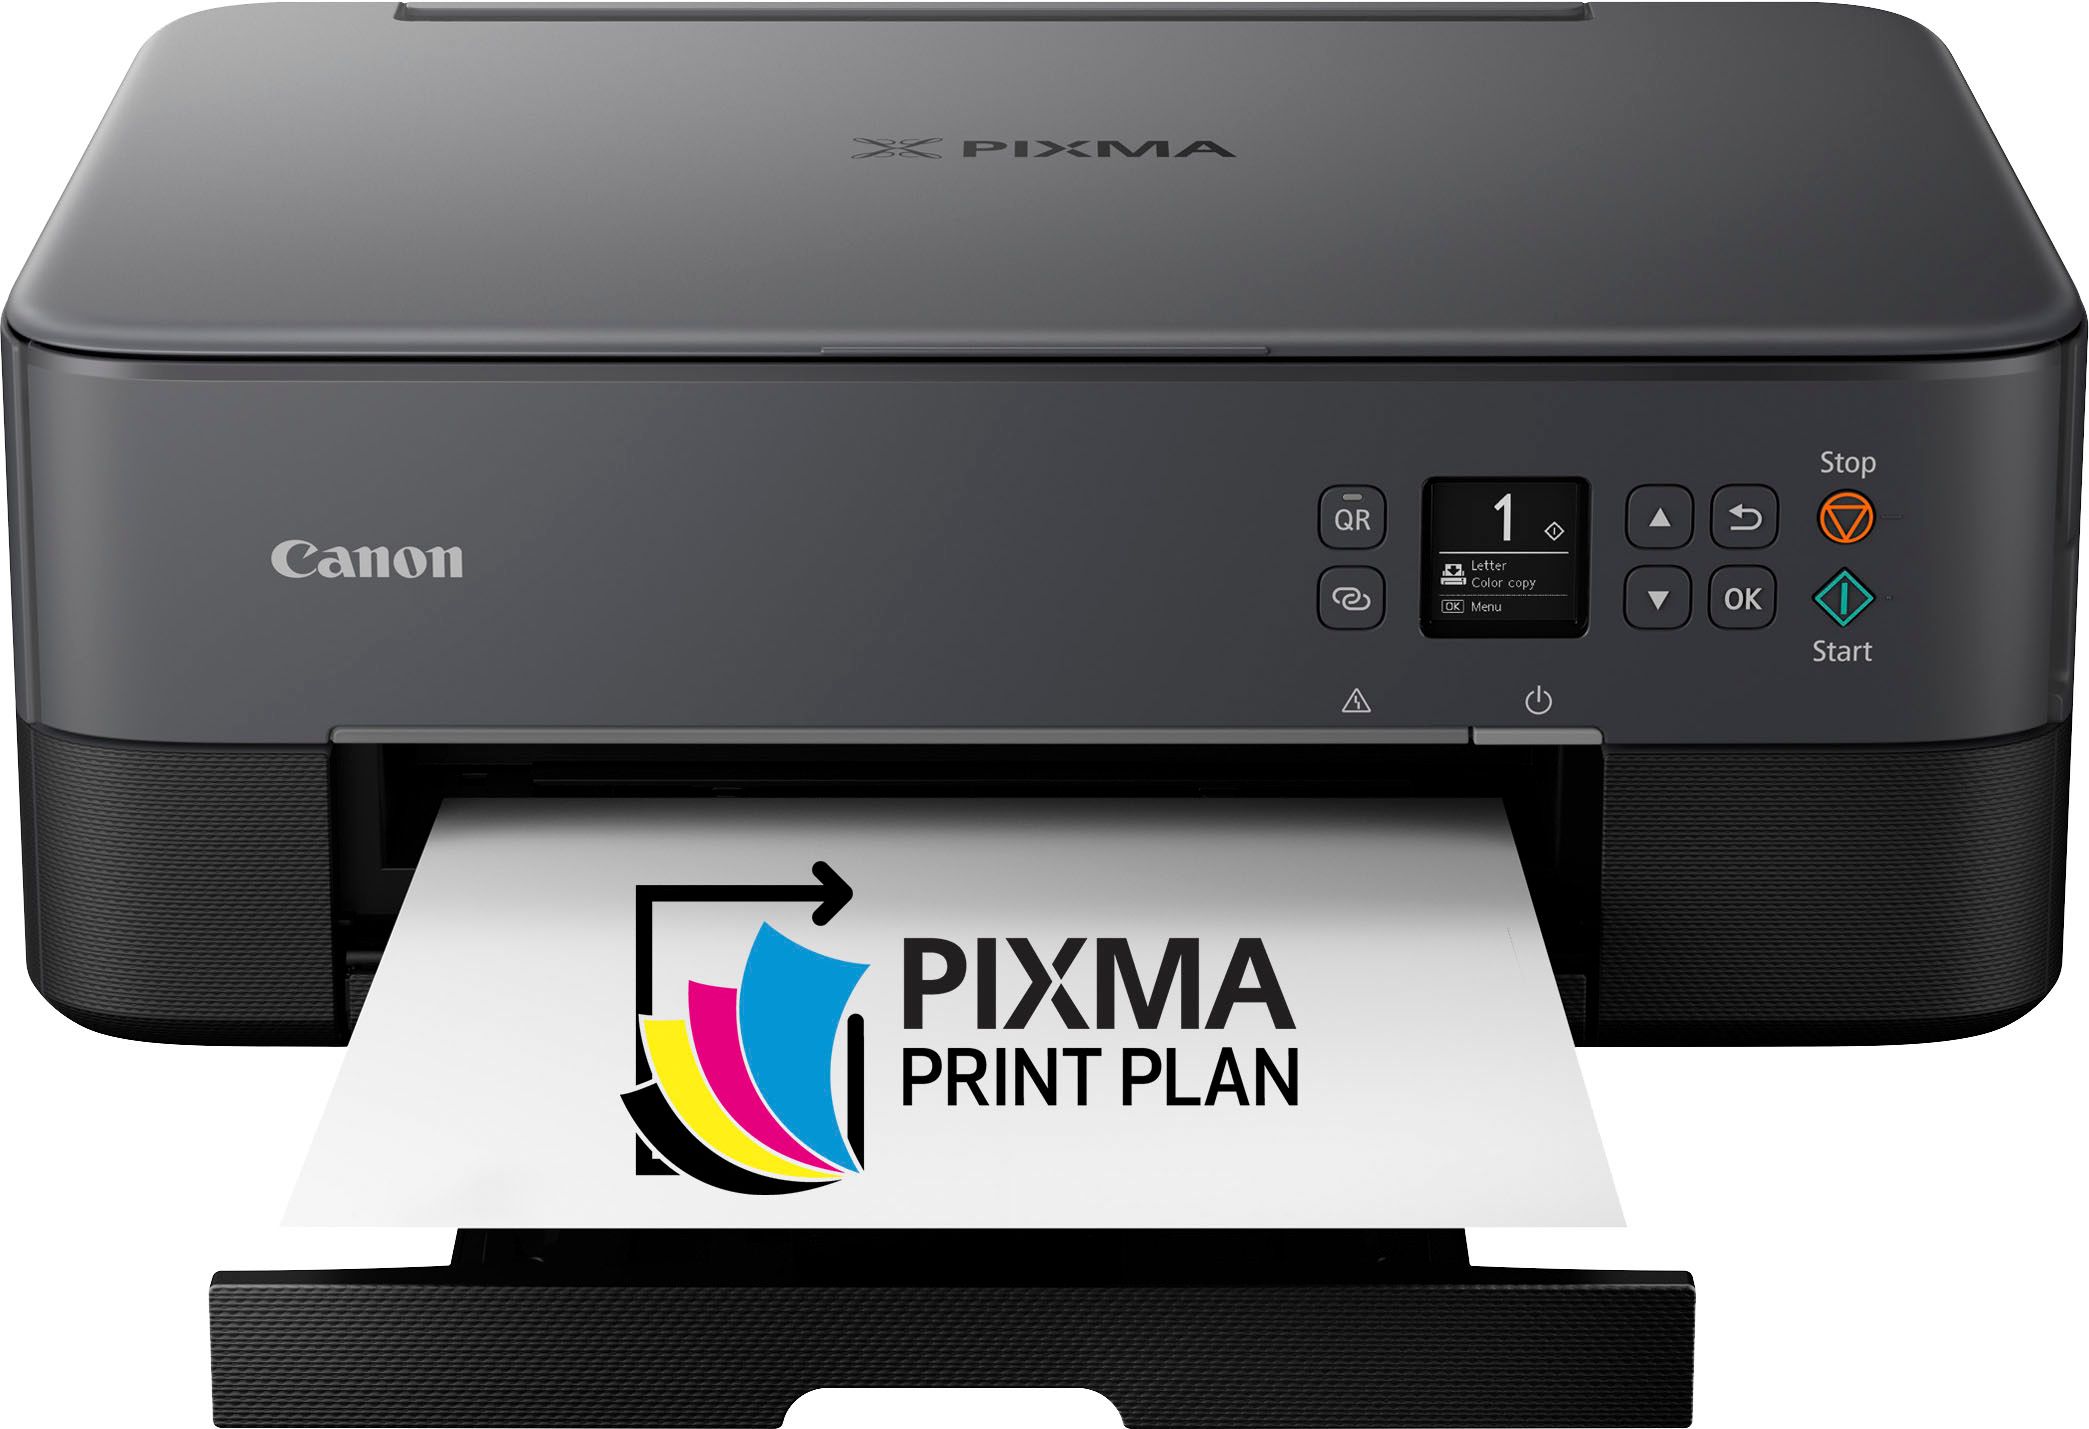 Canon PIXMA TS6420a Wireless All-In-One Inkjet Printer Black 4462C082 - Best Buy | Best Buy U.S.